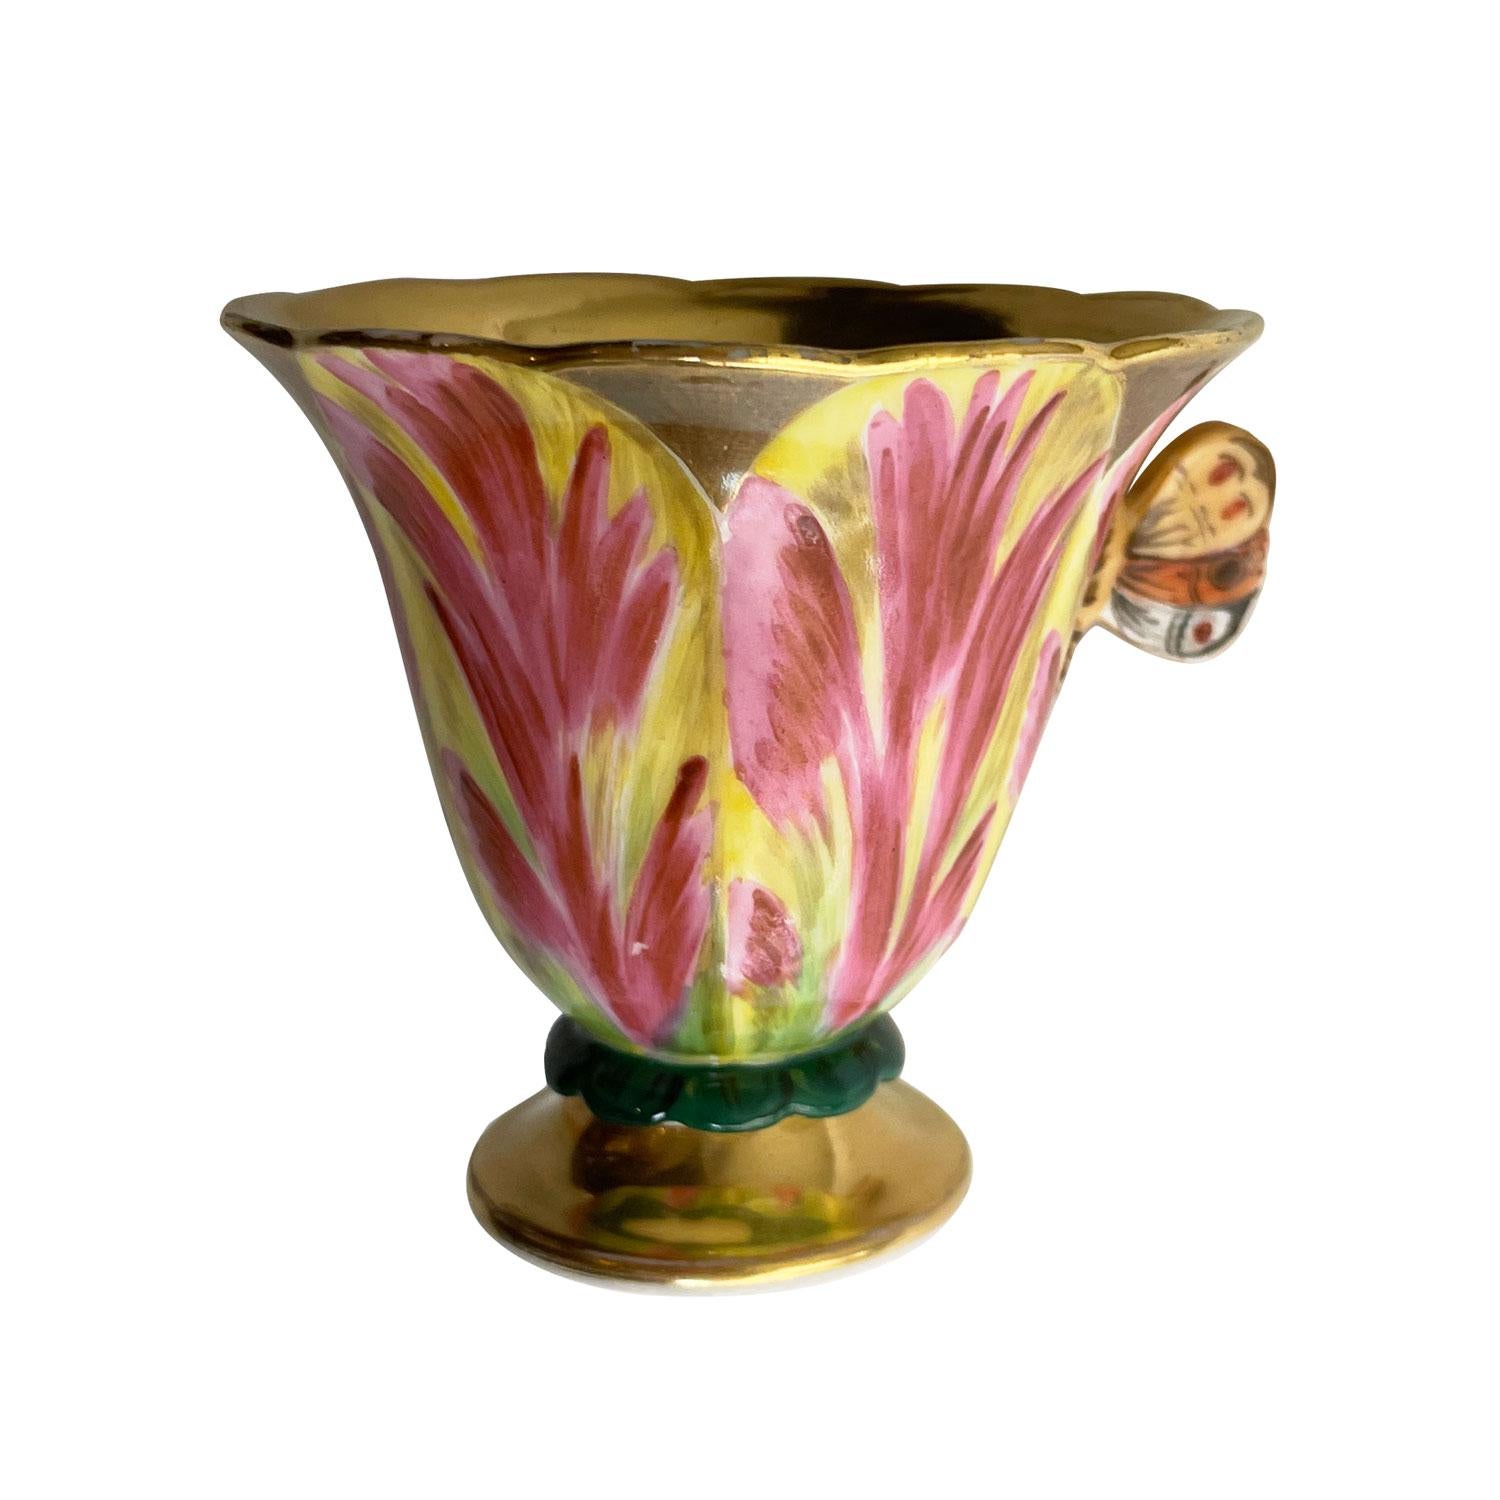 Tulpenförmige Tasse mit Untertasse aus altem Pariser Porzellan. Handbemalte Stücke mit schönen violetten und weißen Farbtönen, in Form einer Tulpenblüte. Sehr zartes Stück mit schmetterlingsförmigem Griff, dessen Ränder leicht gewellt sind und an